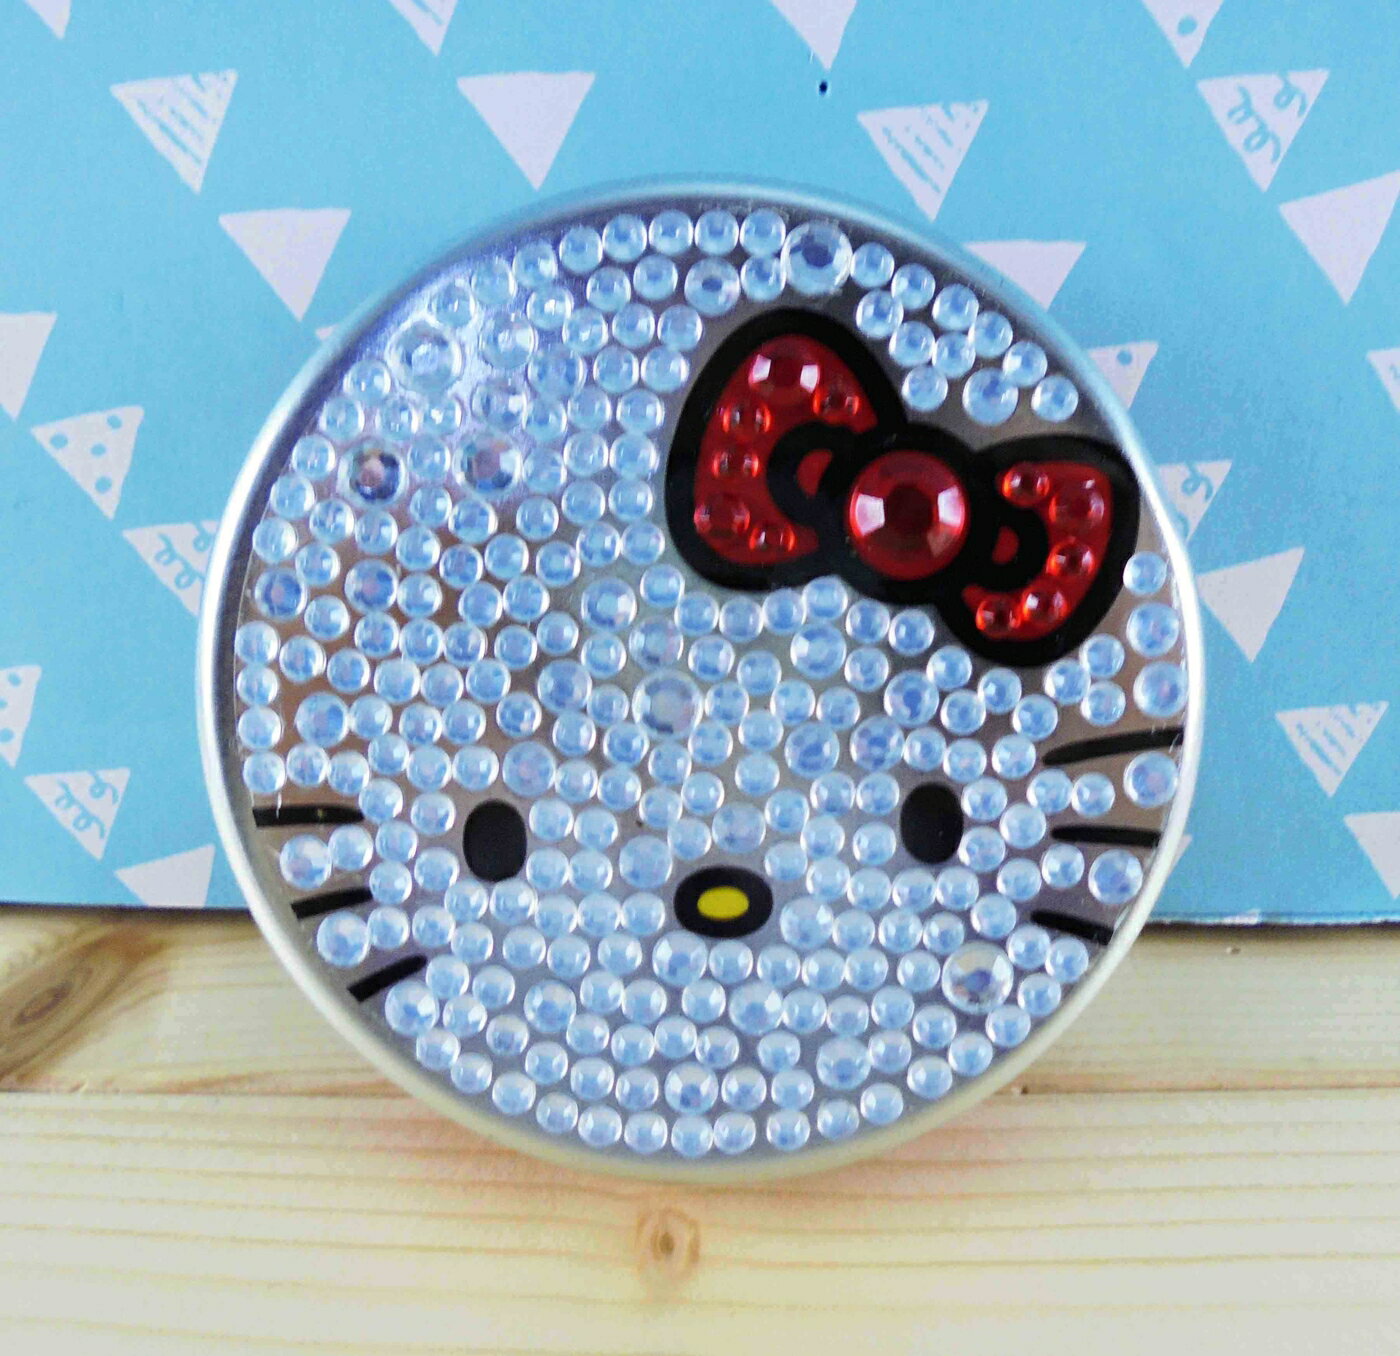 【震撼精品百貨】Hello Kitty 凱蒂貓 KITTY圓鐵盒-銀鑽 震撼日式精品百貨